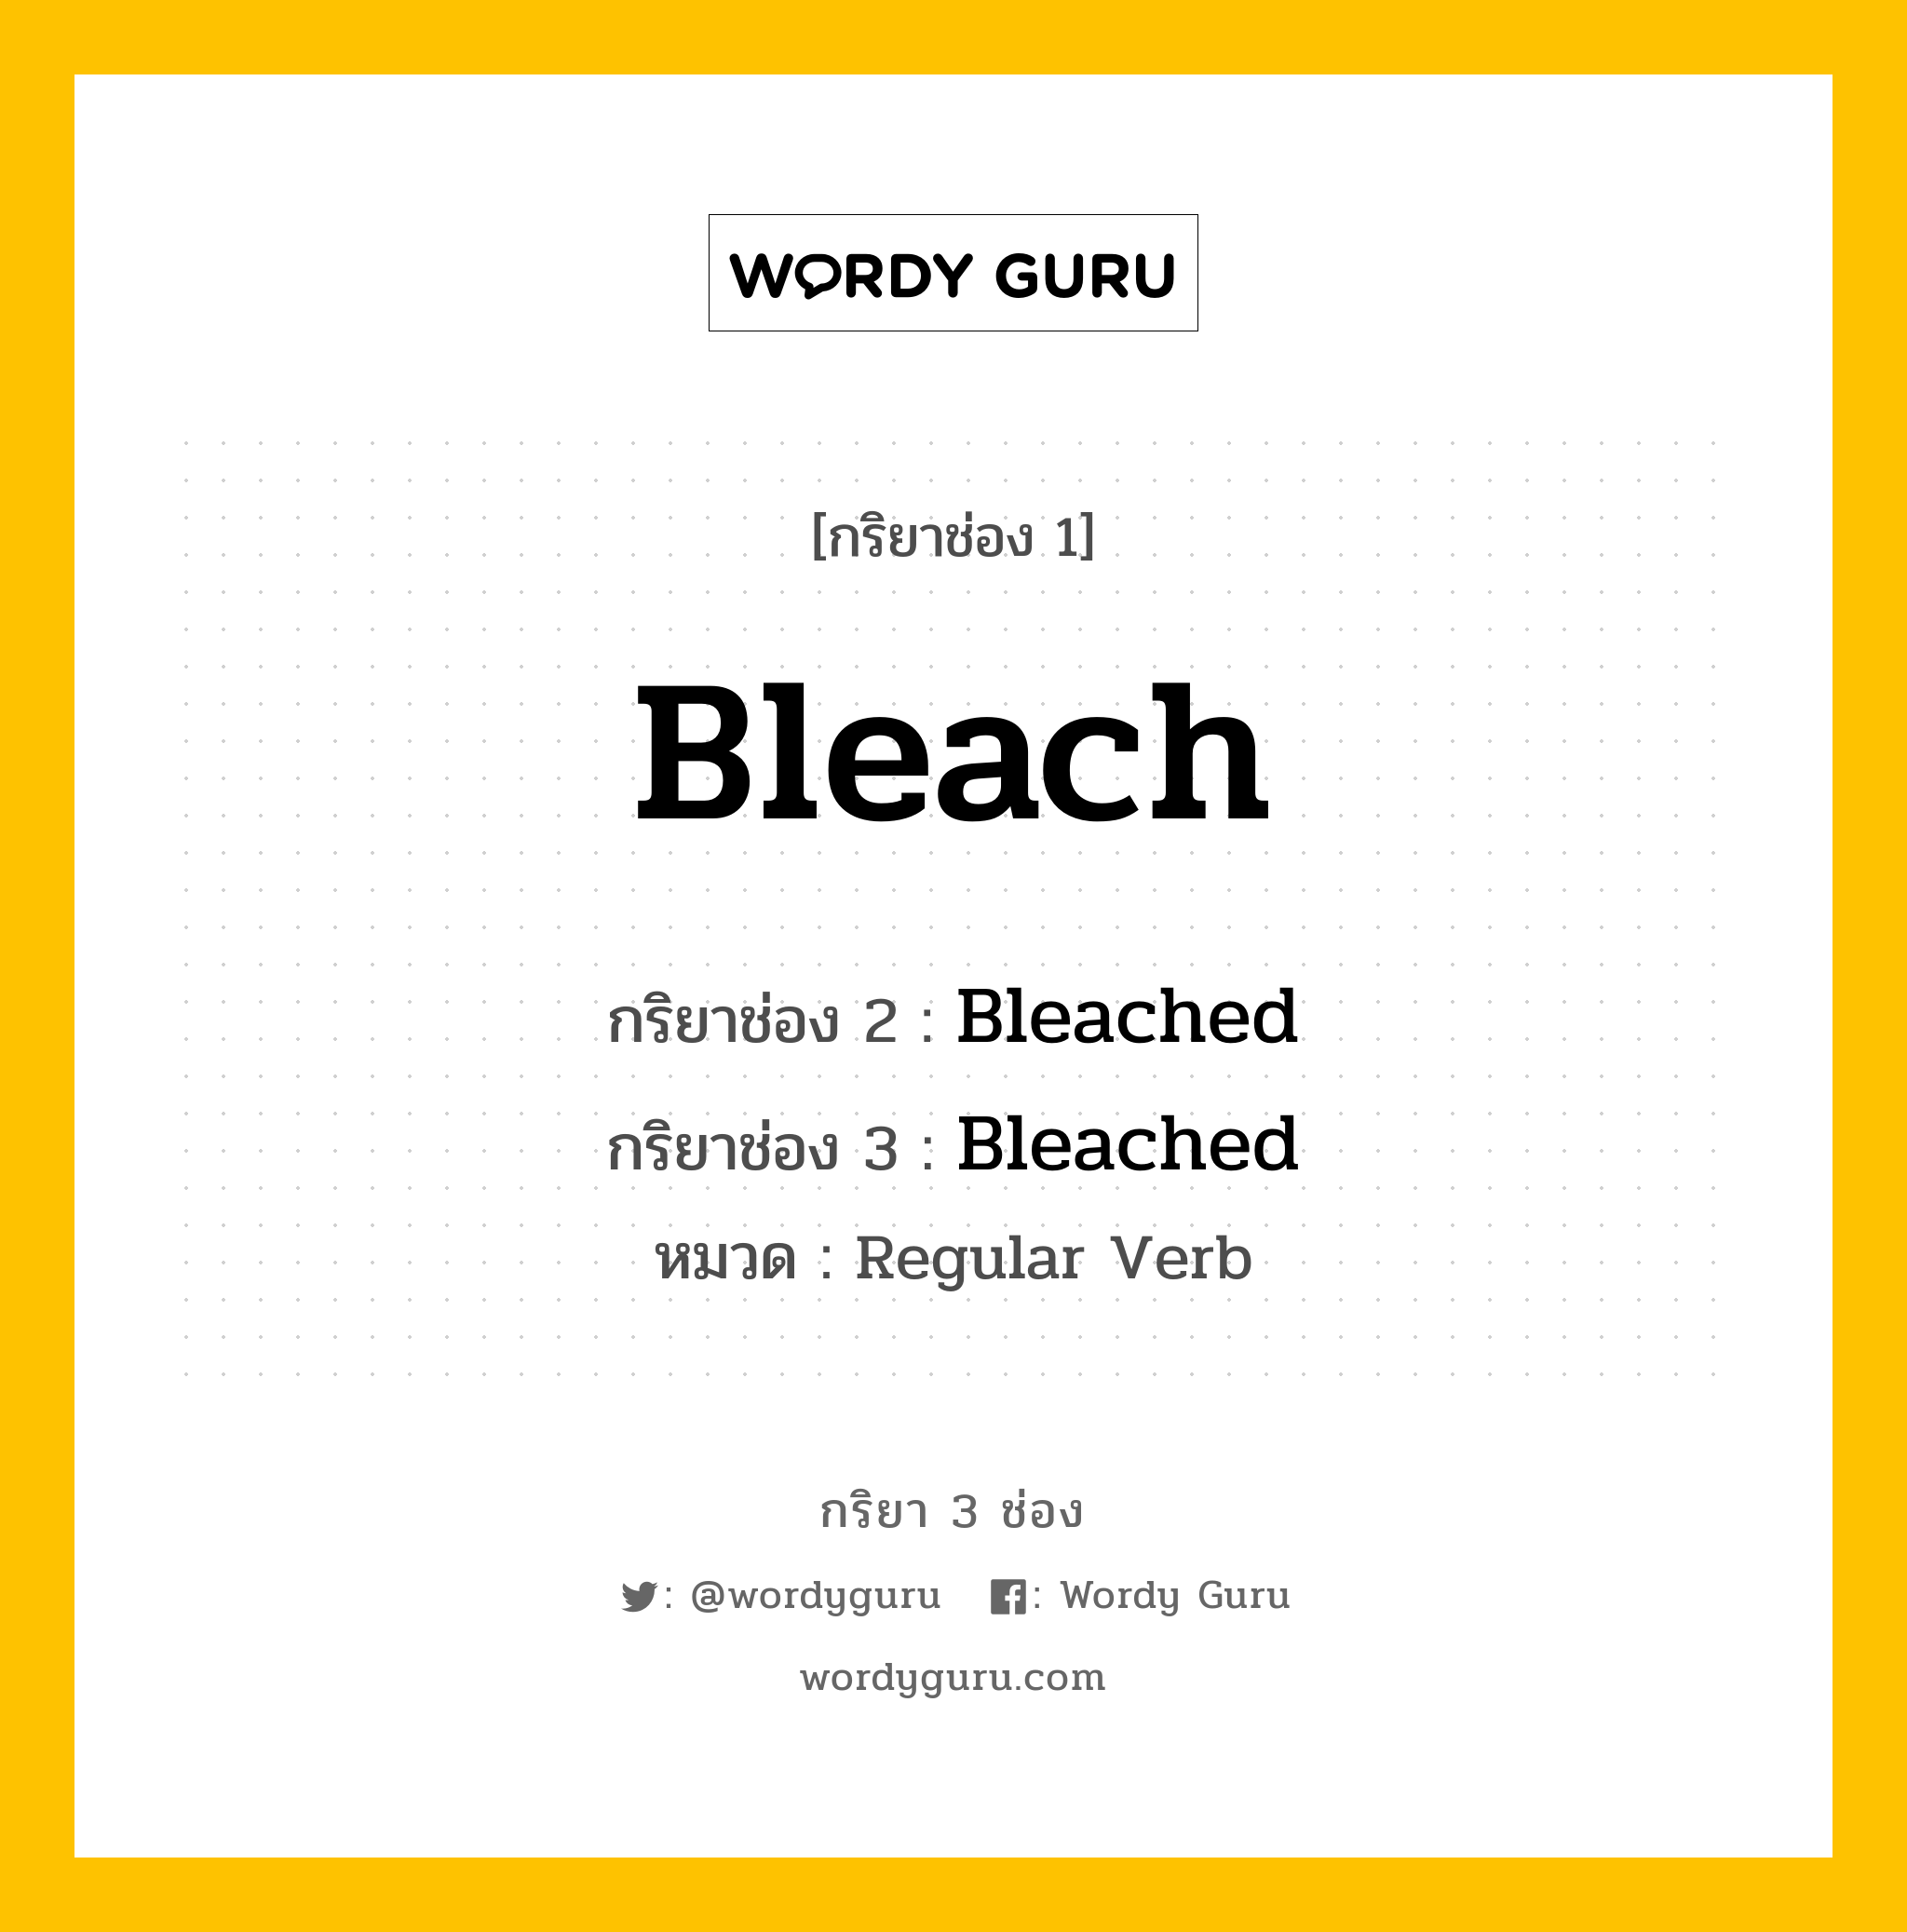 กริยา 3 ช่อง: Bleach ช่อง 2 Bleach ช่อง 3 คืออะไร, กริยาช่อง 1 Bleach กริยาช่อง 2 Bleached กริยาช่อง 3 Bleached หมวด Regular Verb หมวด Regular Verb